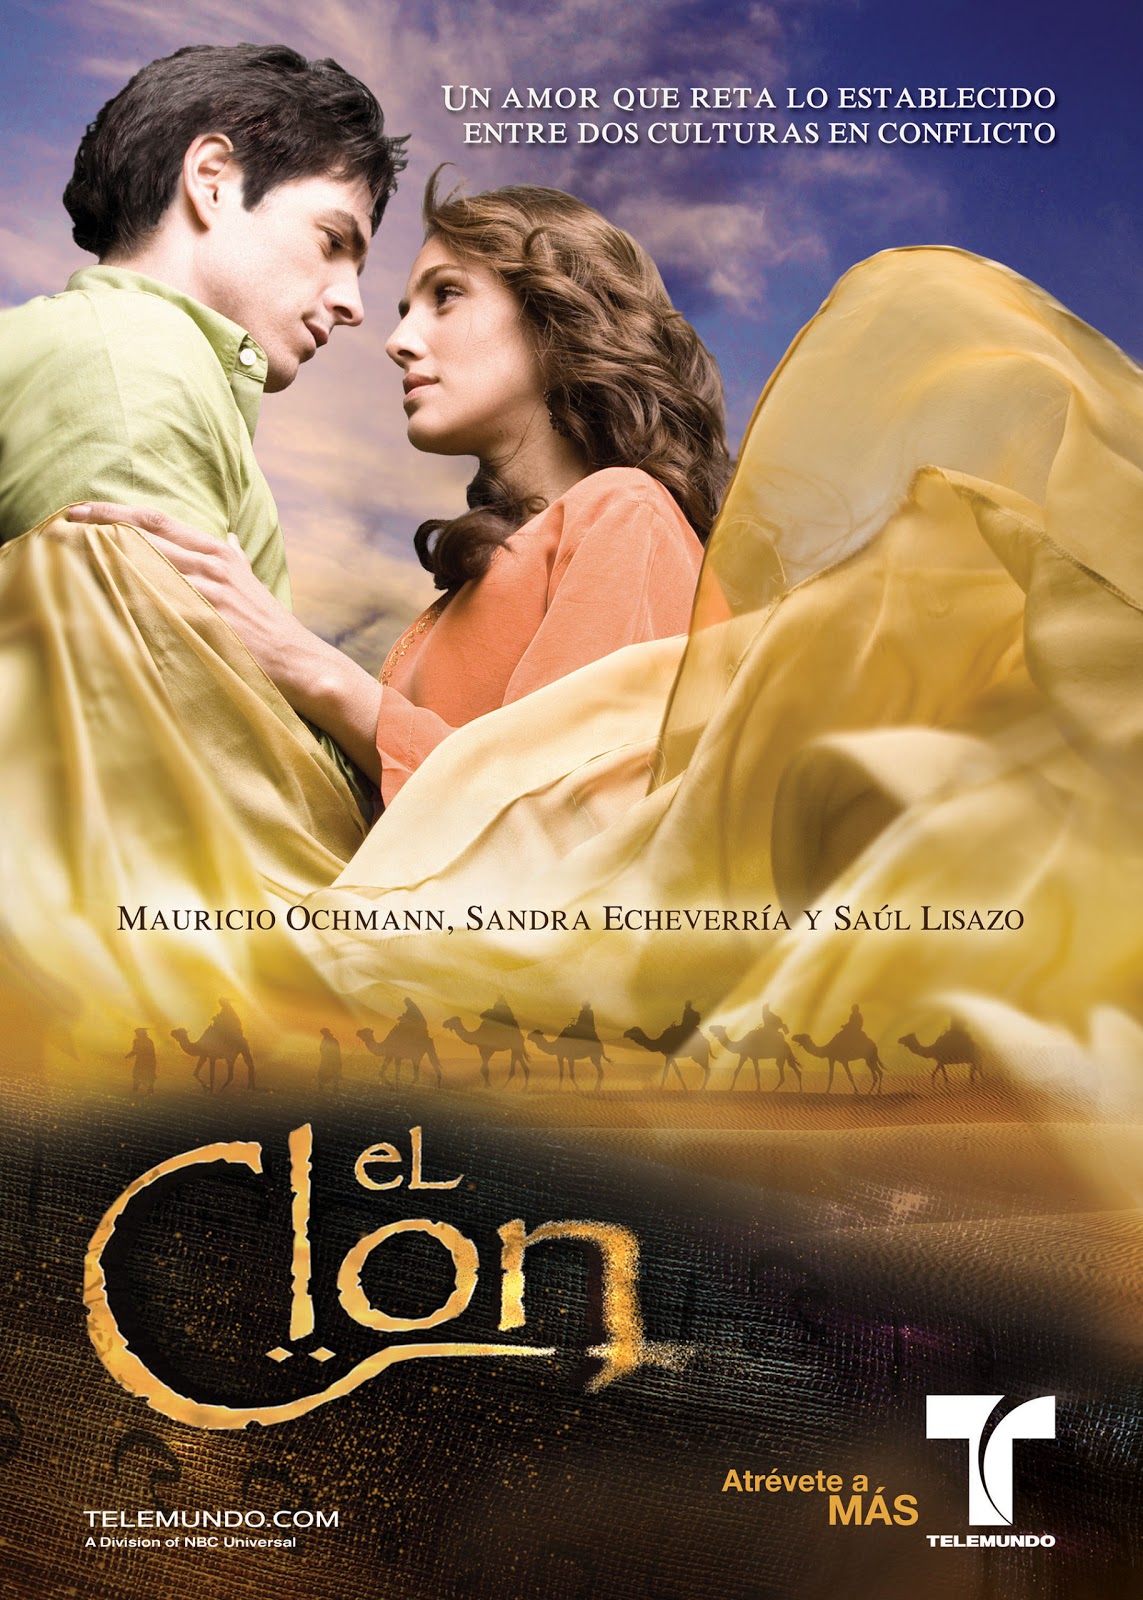 El Clon 2001